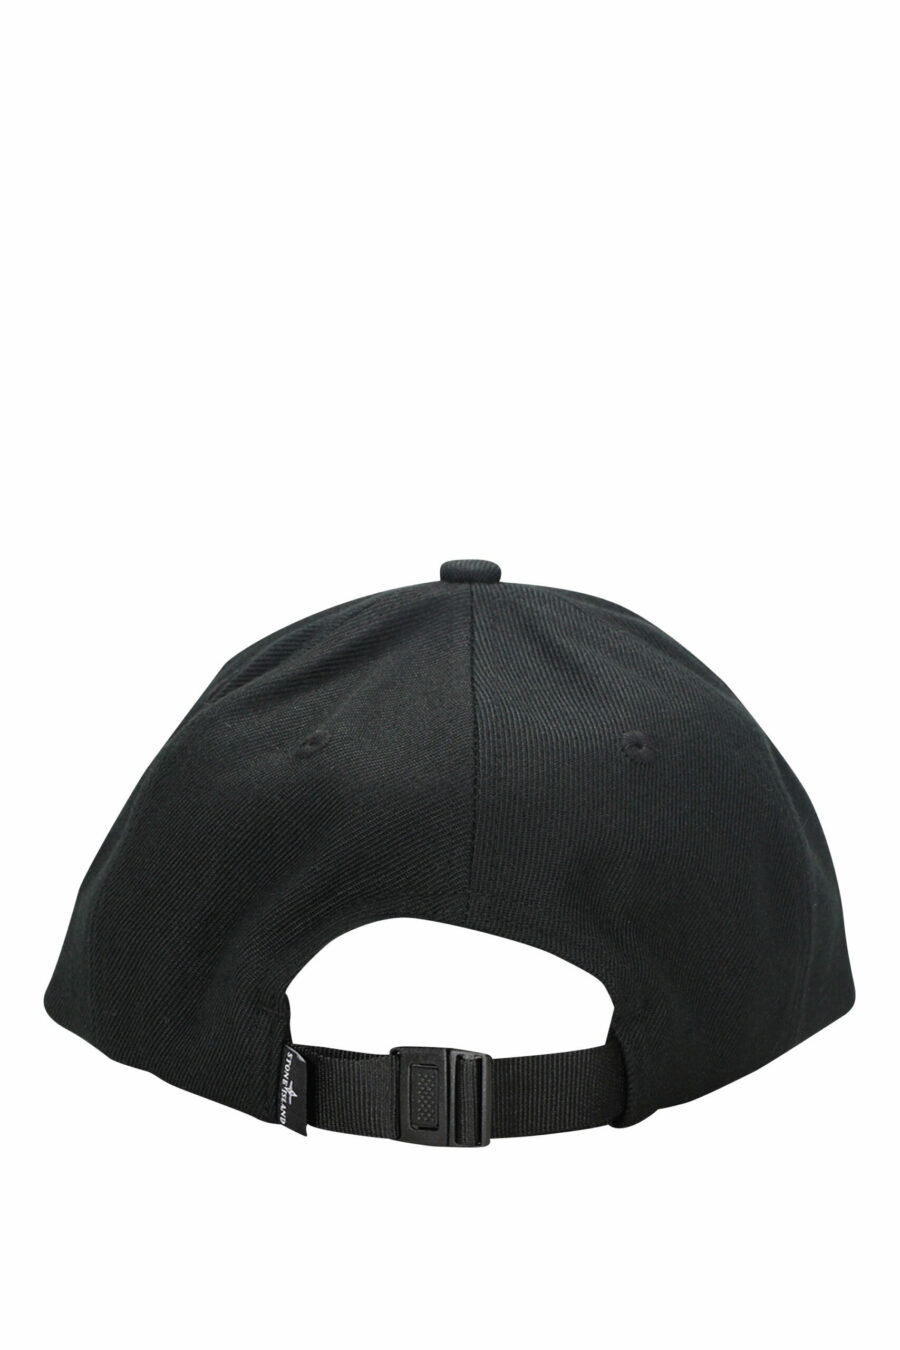 Schwarze Kappe mit geprägtem, gesticktem Logo - 8052572734557 1 skaliert